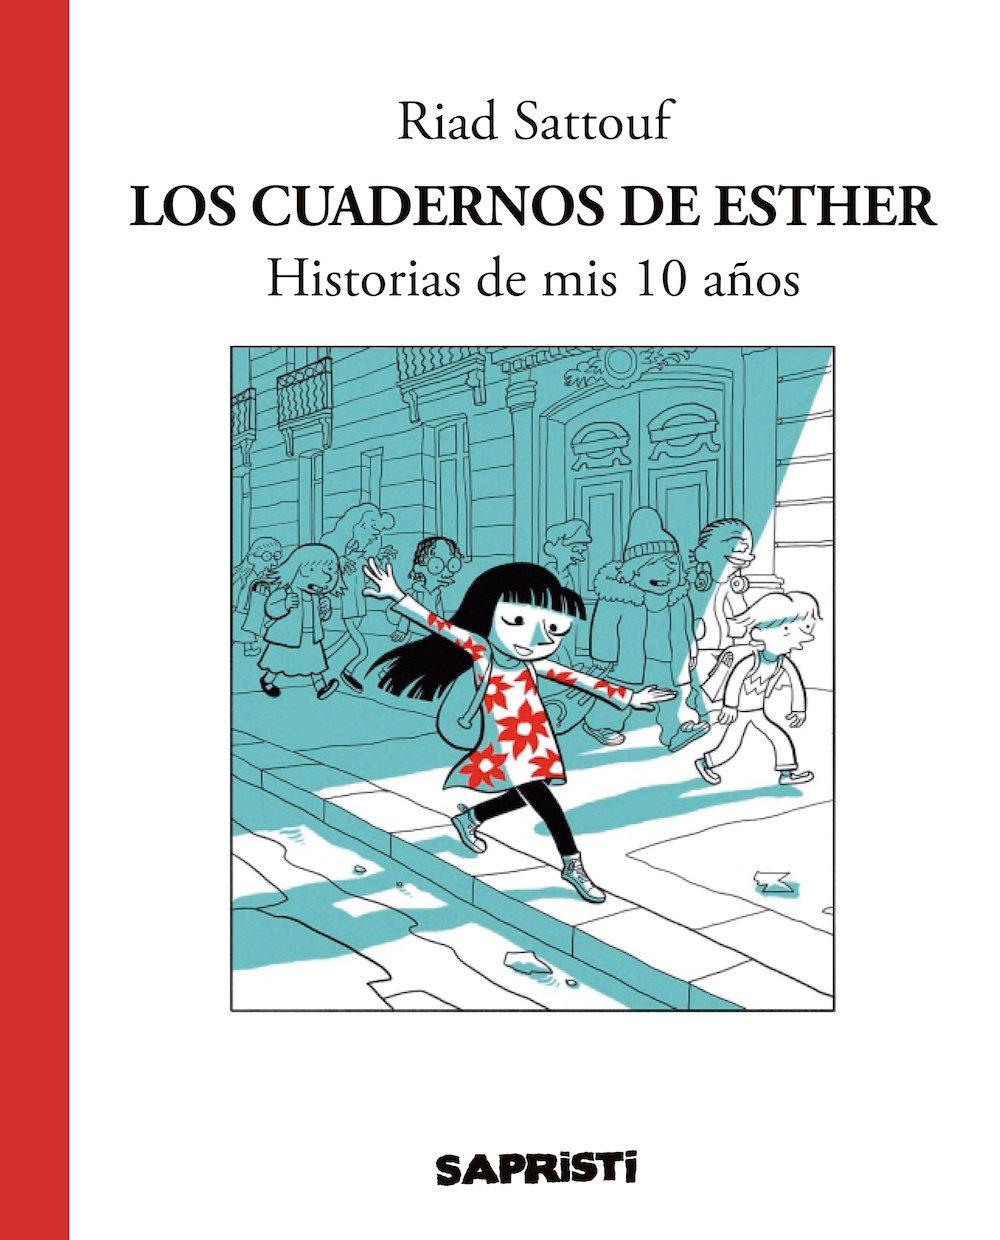 Los Cuadernos de Esther "Historias de mis 10 años"